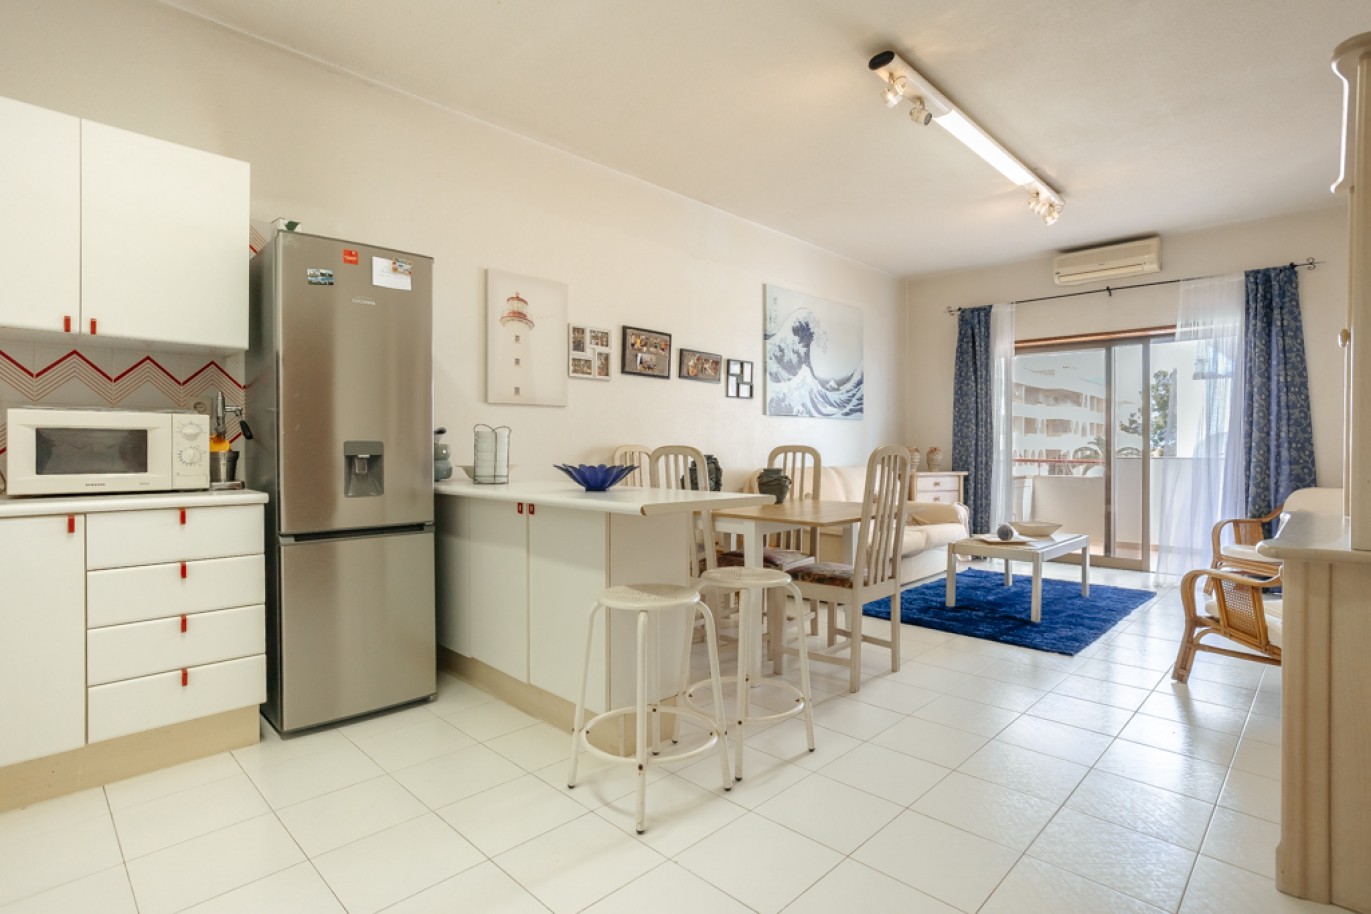 Apartamento com 1+1 quartos, com vista mar, para venda em Porches, Algarve_257044